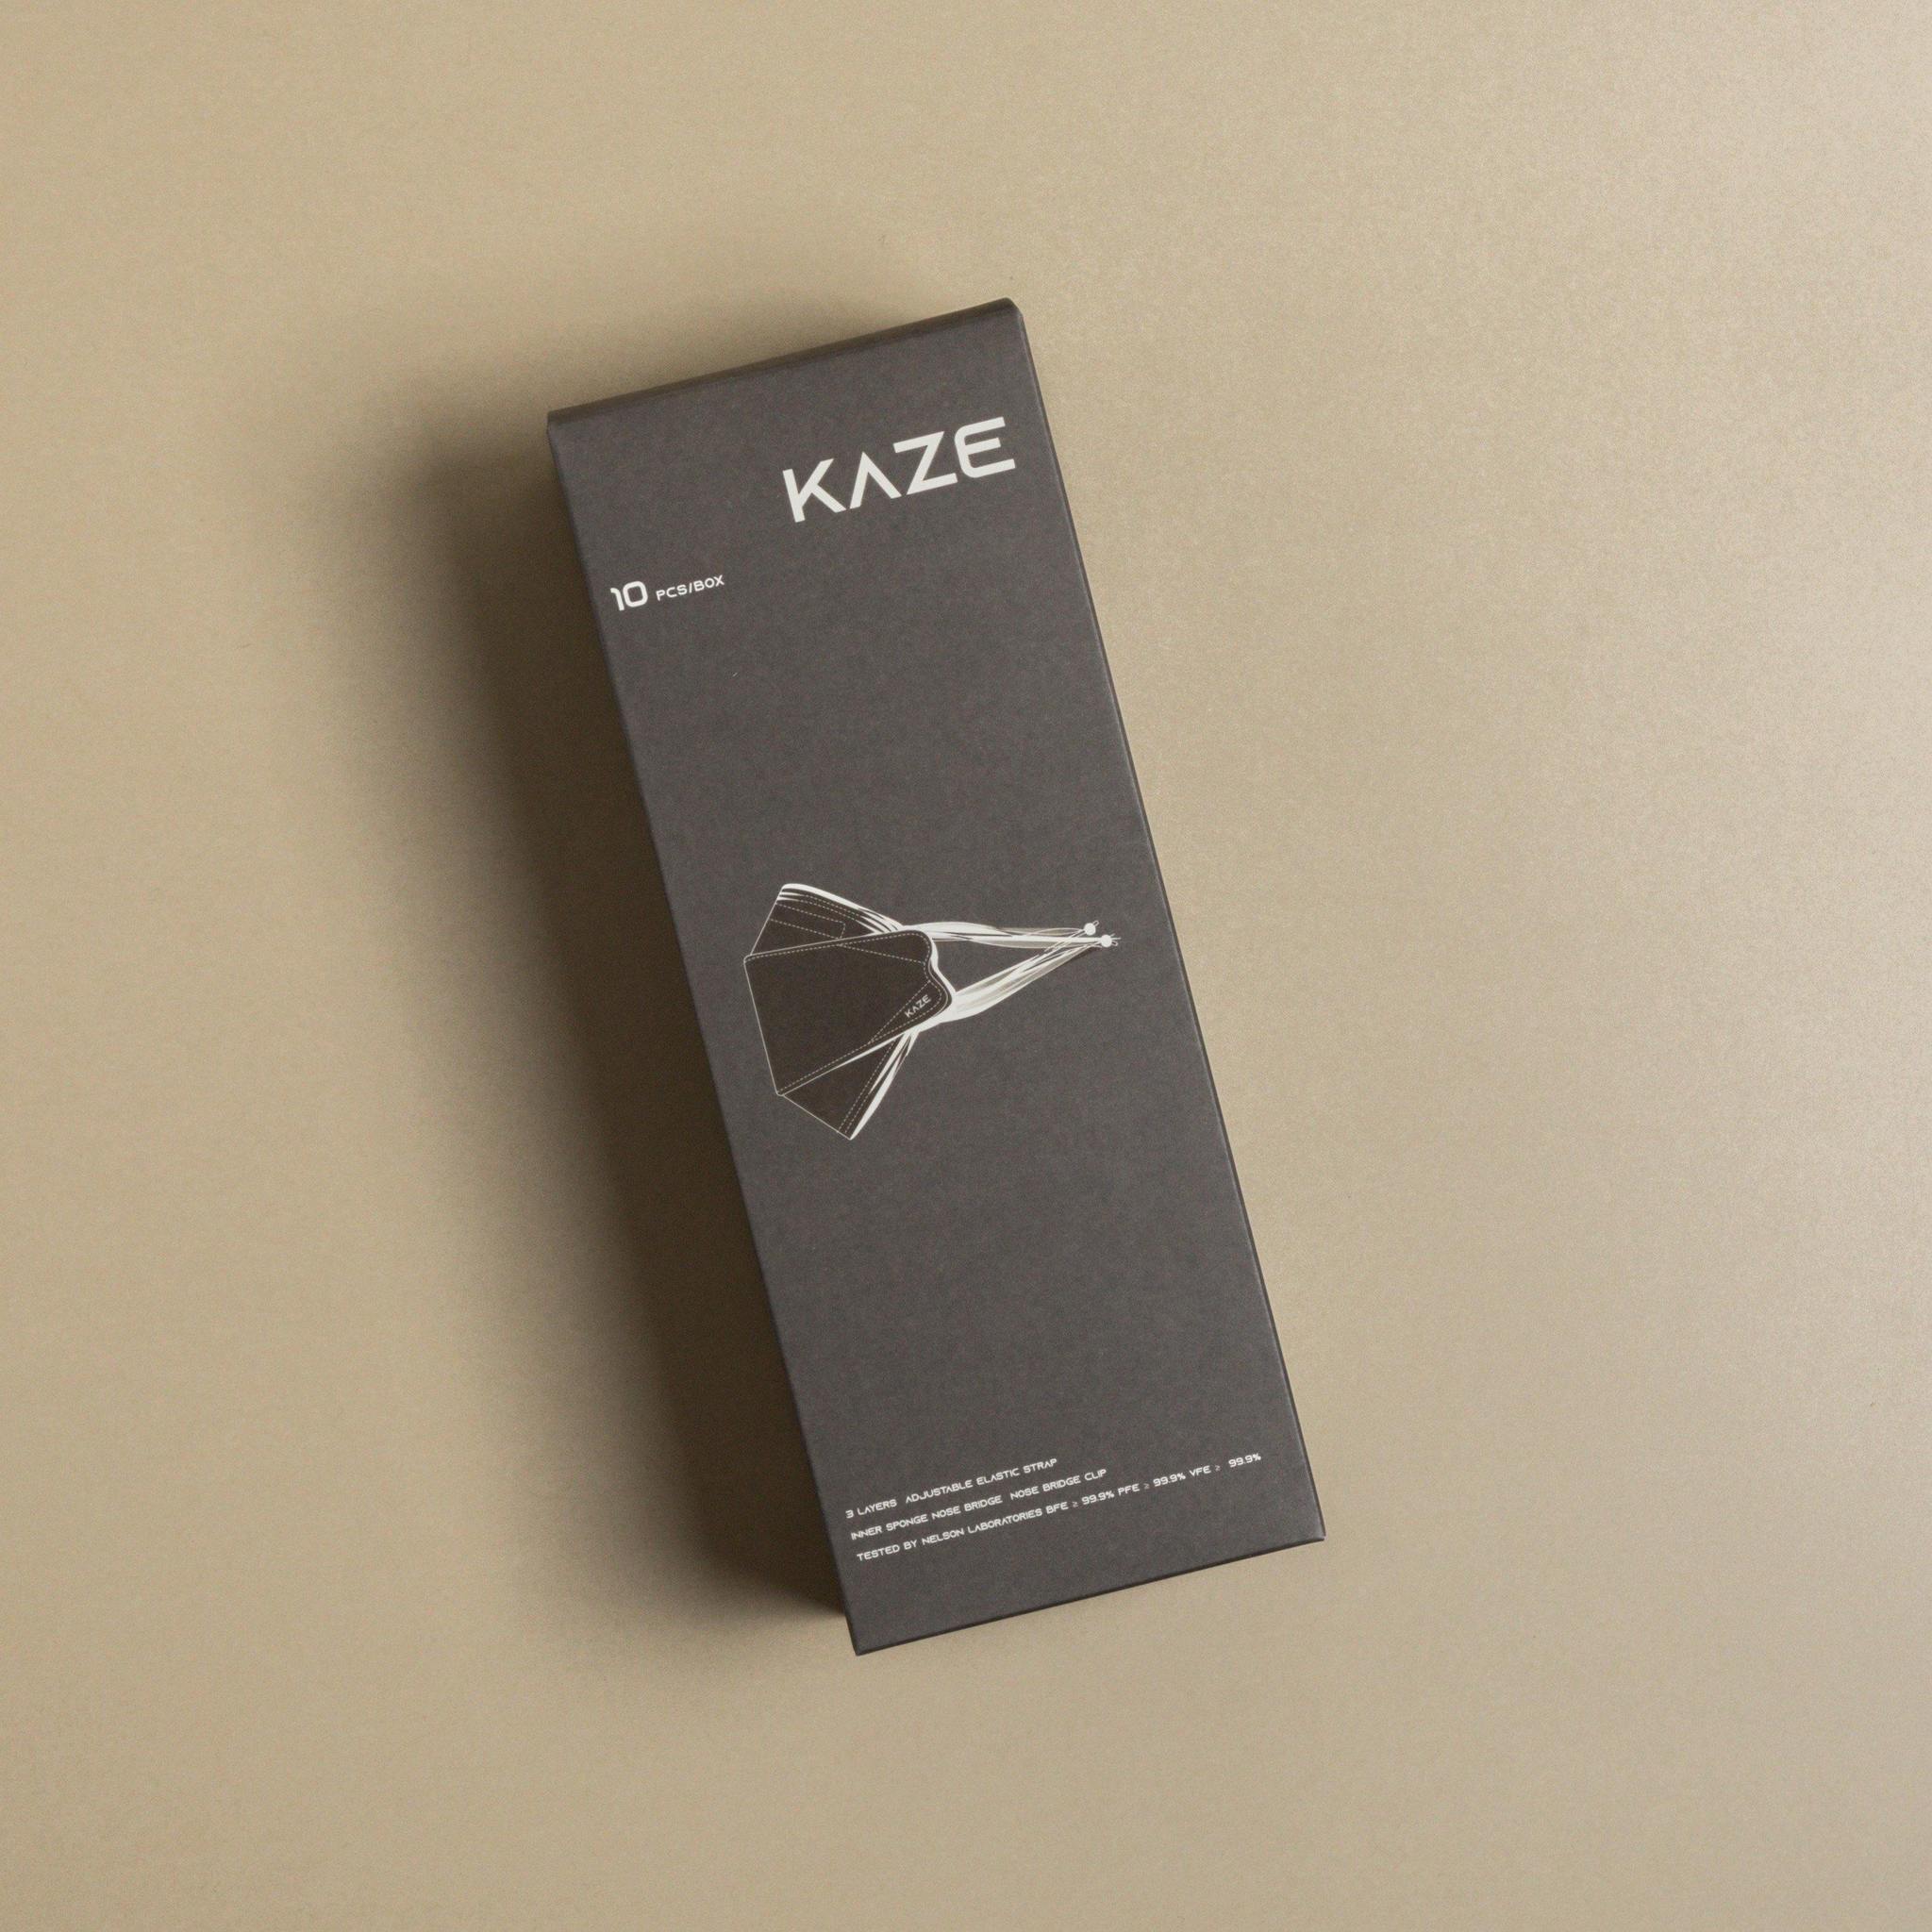 KAZE Masks - Light Individual Series - Espresso